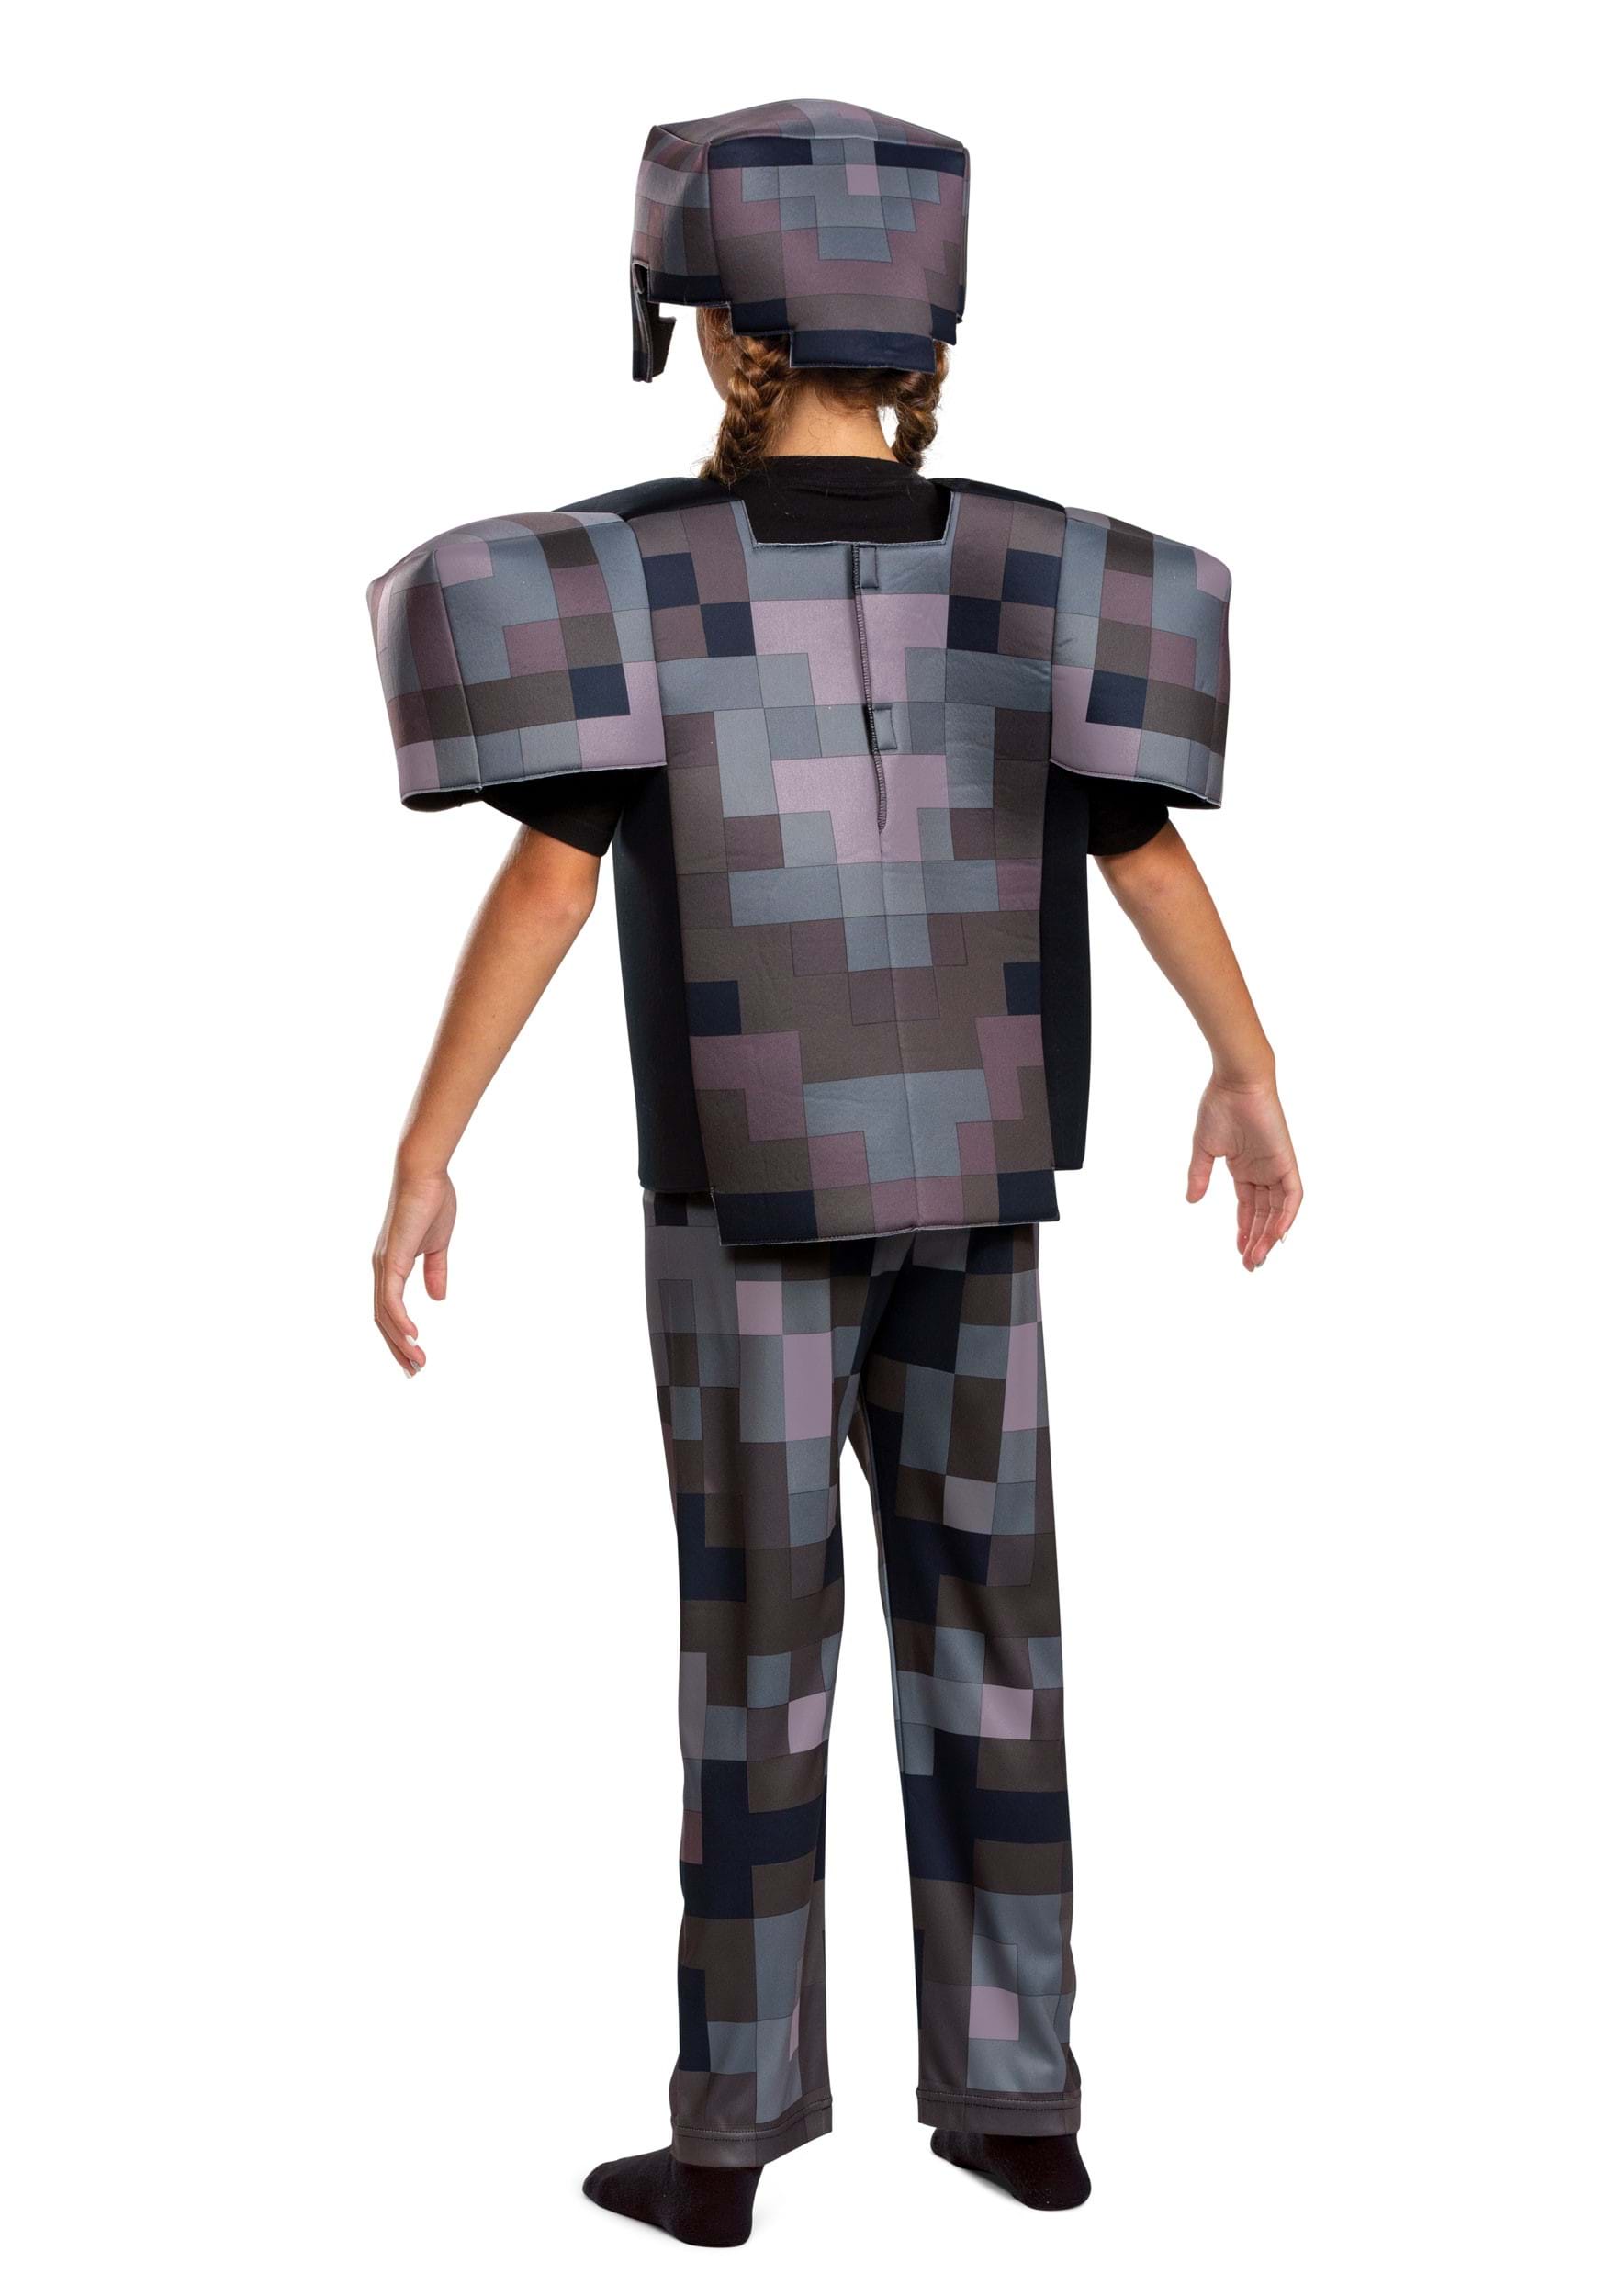 Better Netherite Armor (no leggings) Minecraft Skin